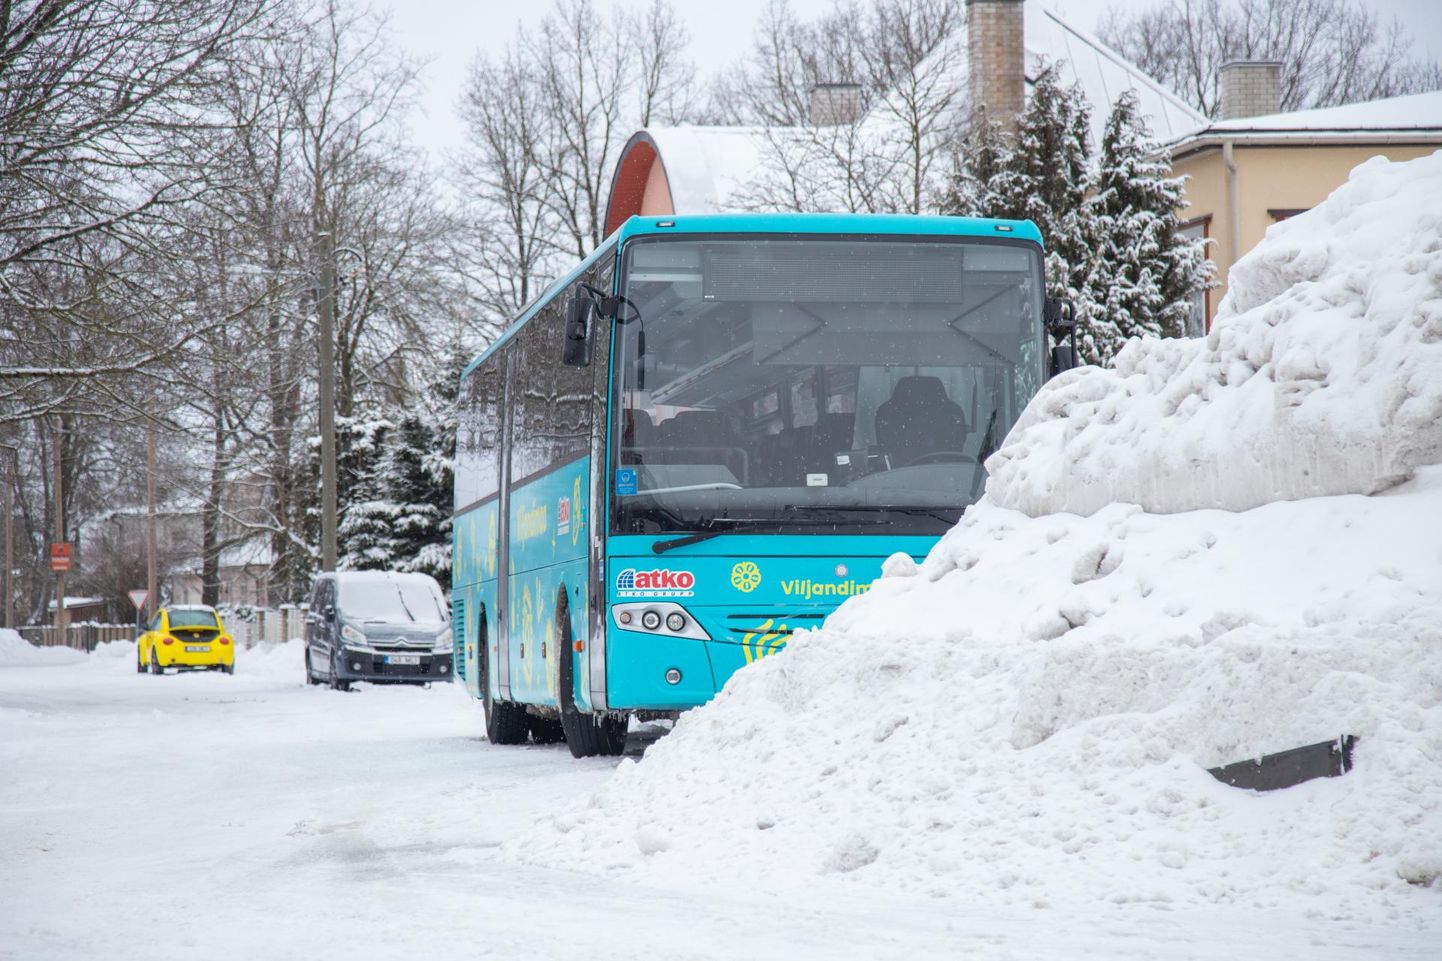 Kui maateedel sõites oli bussijuhtide mure paks lumi. millest tuli läbi rühkida, siis linnas tuleb hakkama saada kitsaks muutunud tänavatel.